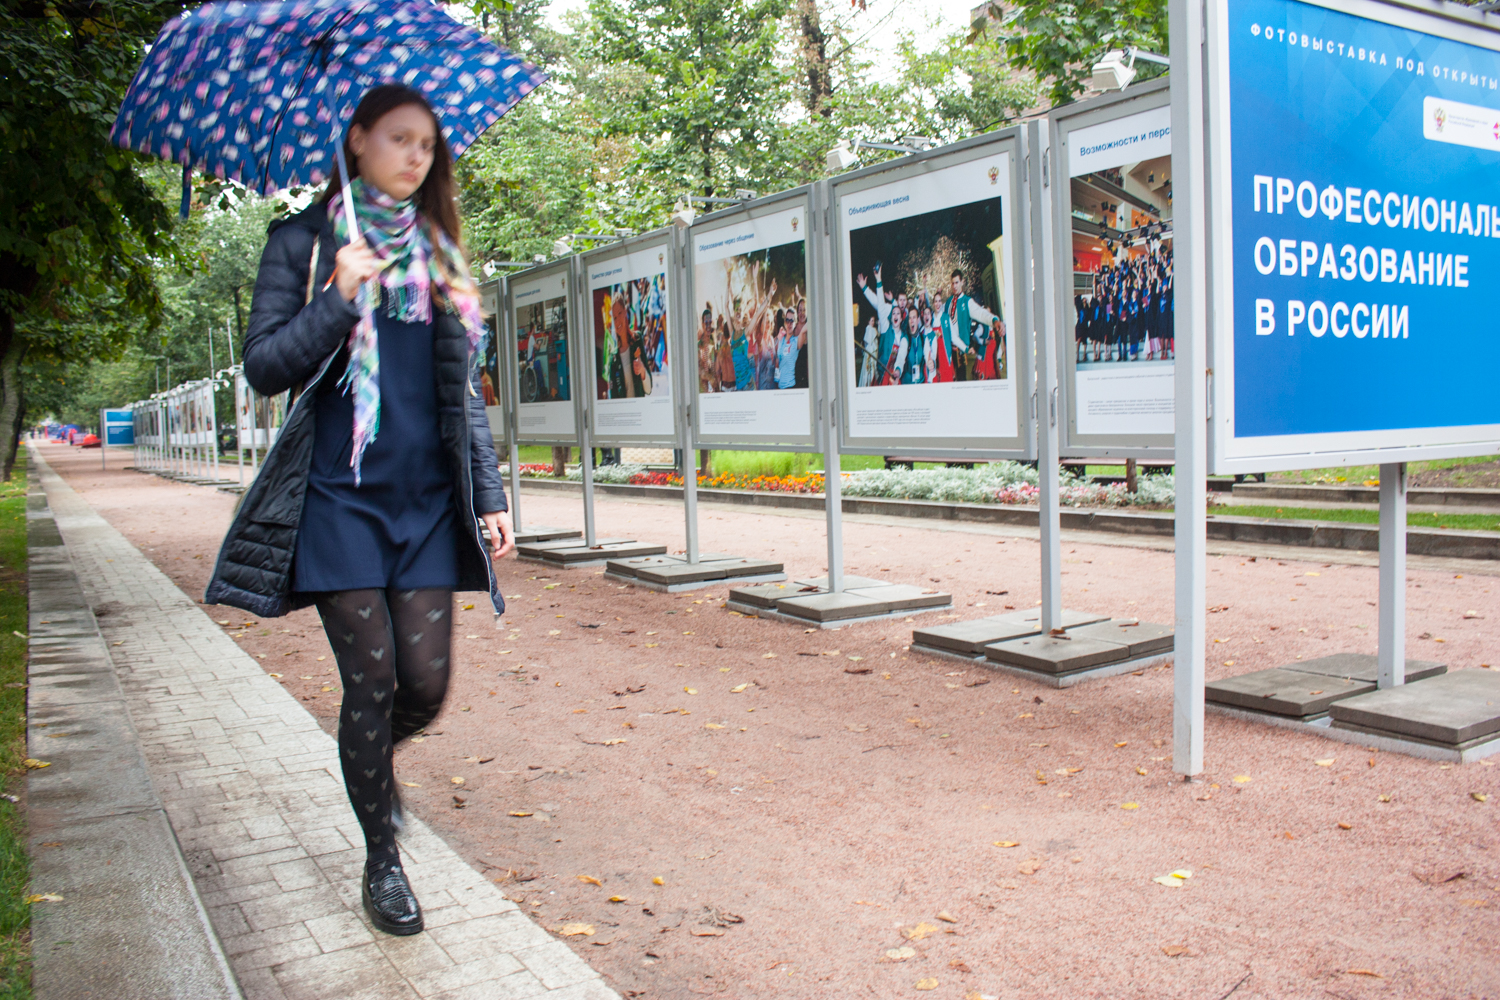 Вниманию СМИ: Фотовыставка «Профессиональное образование в России» открывается на Тверском бульваре столицы